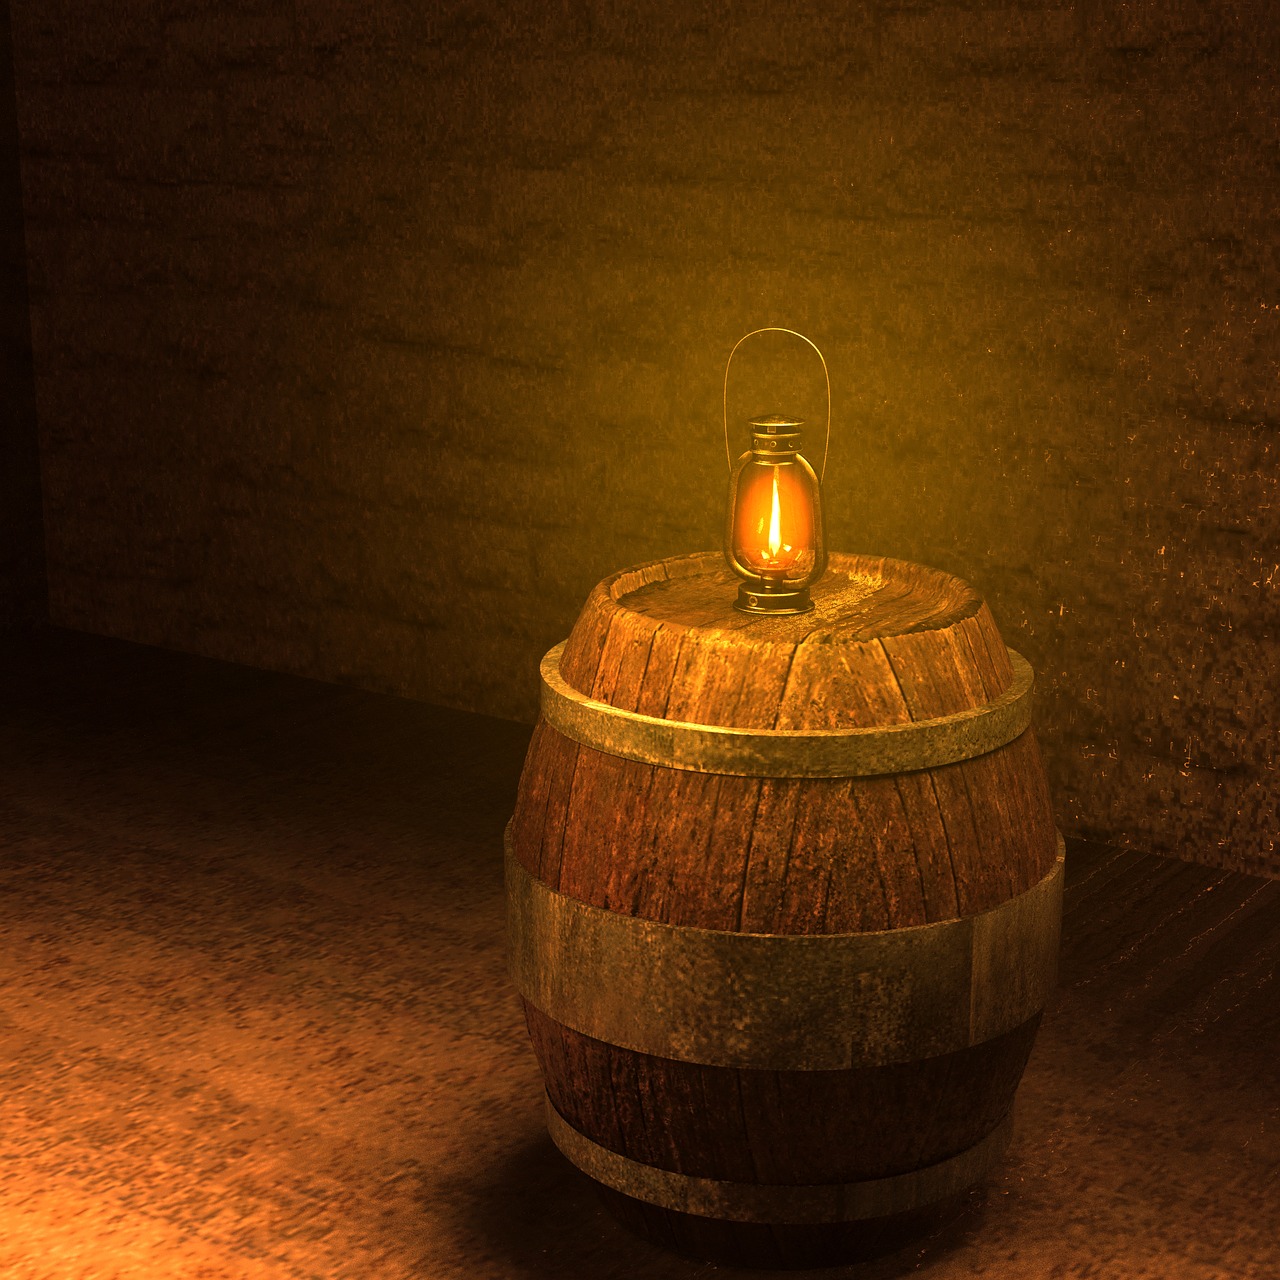 keller barrel lantern free photo